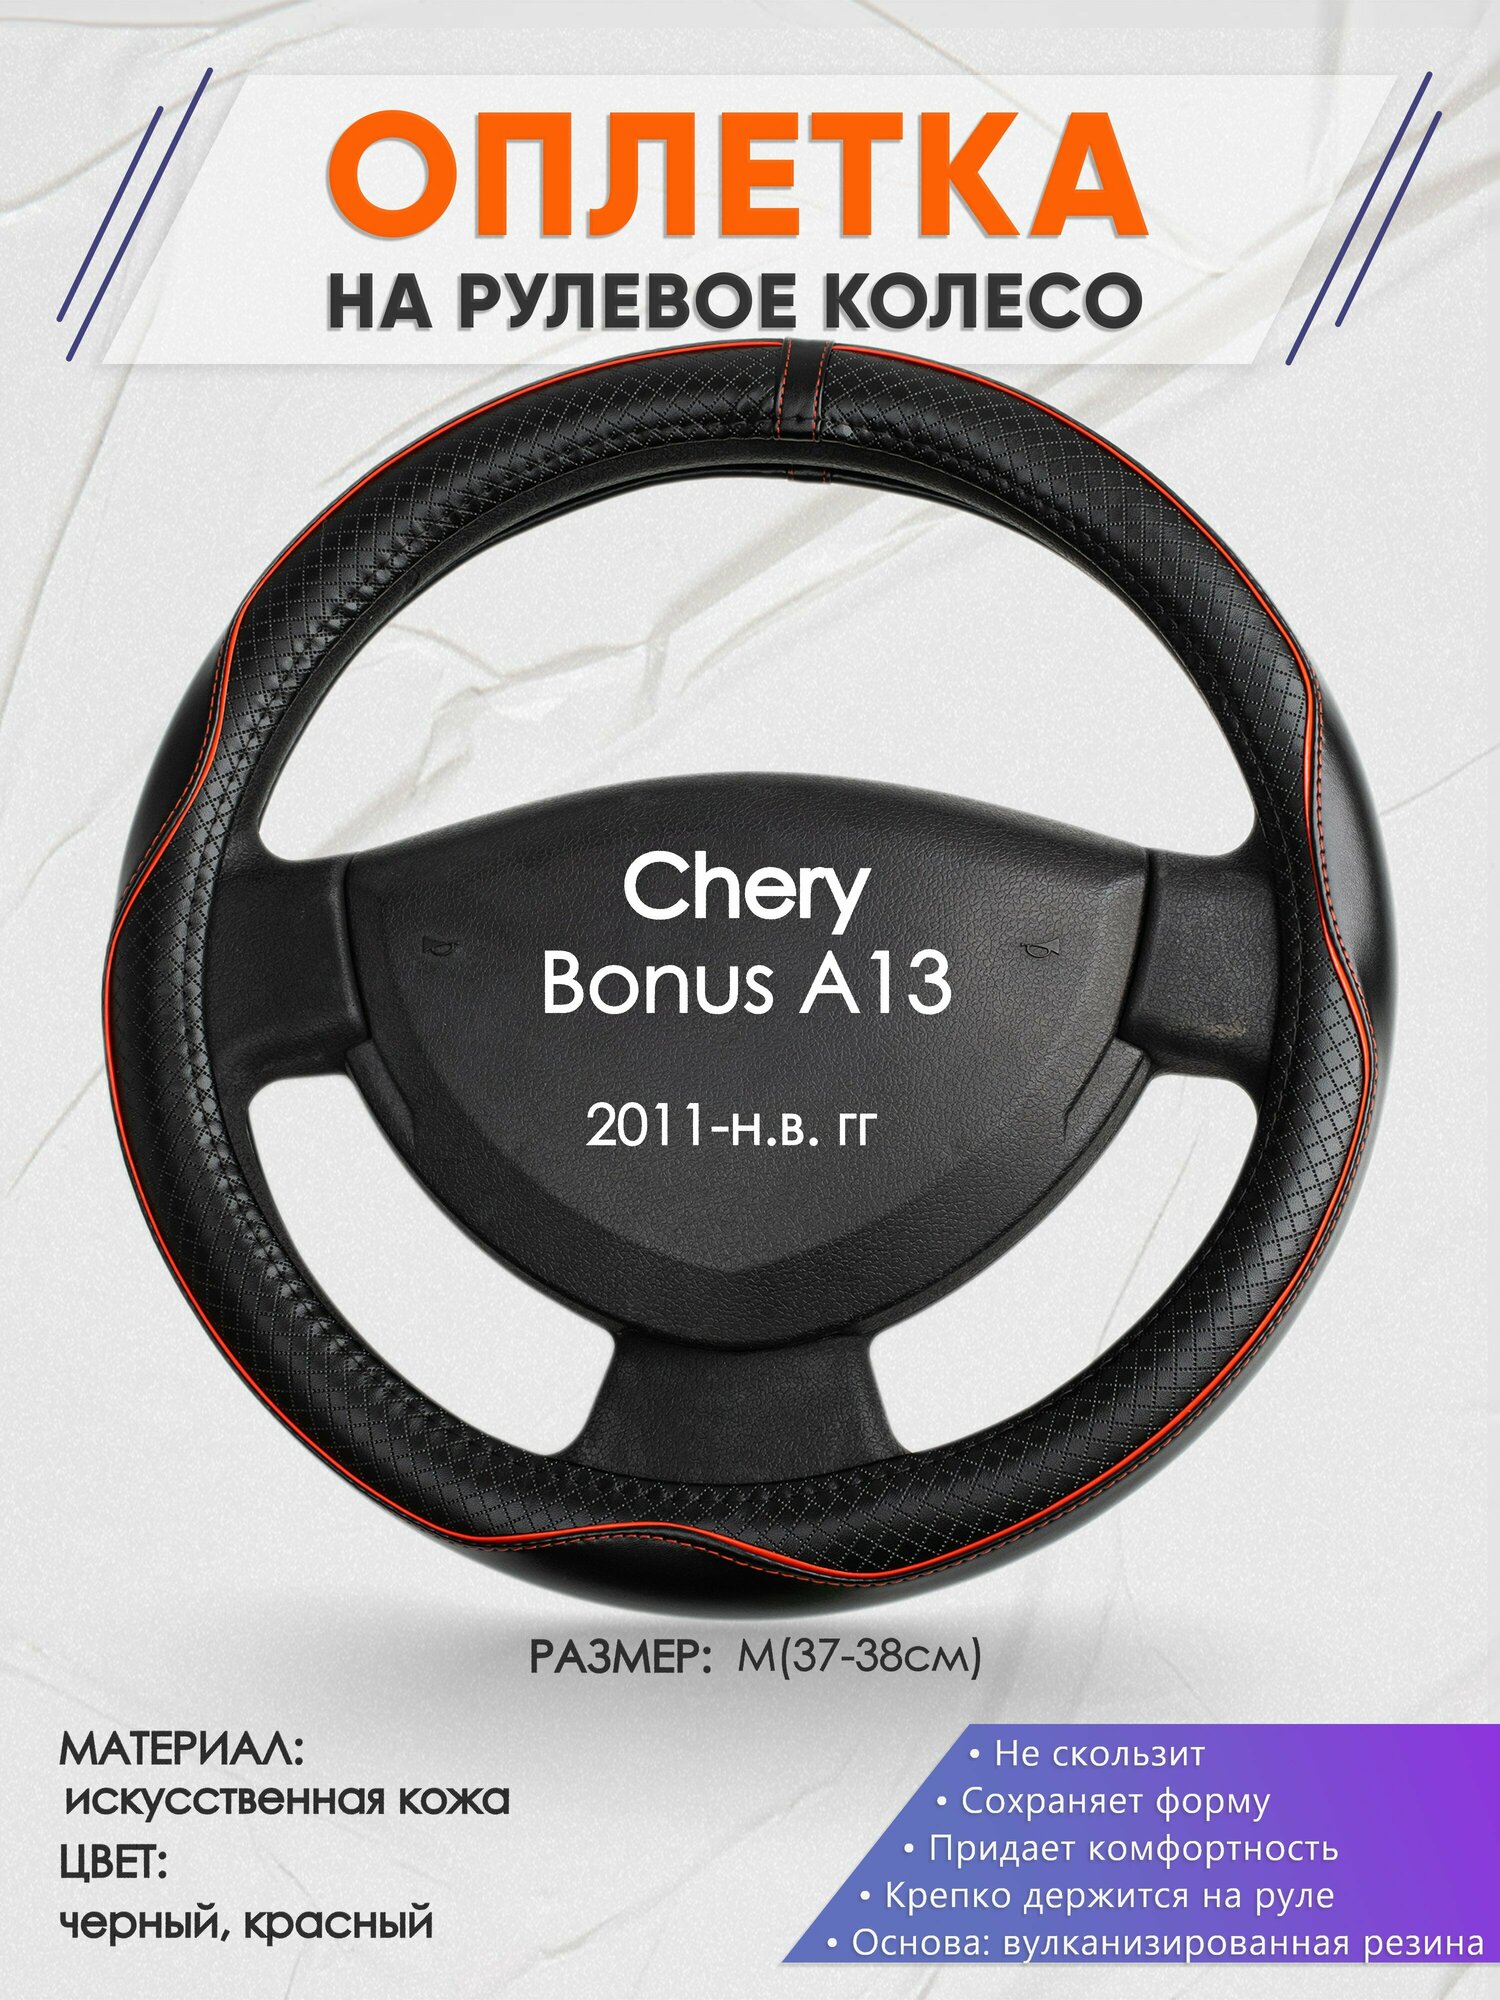 Оплетка на руль для Chery Bonus A13(Чери Бонус А13) 2011-н. в, M(37-38см), Искусственная кожа 86